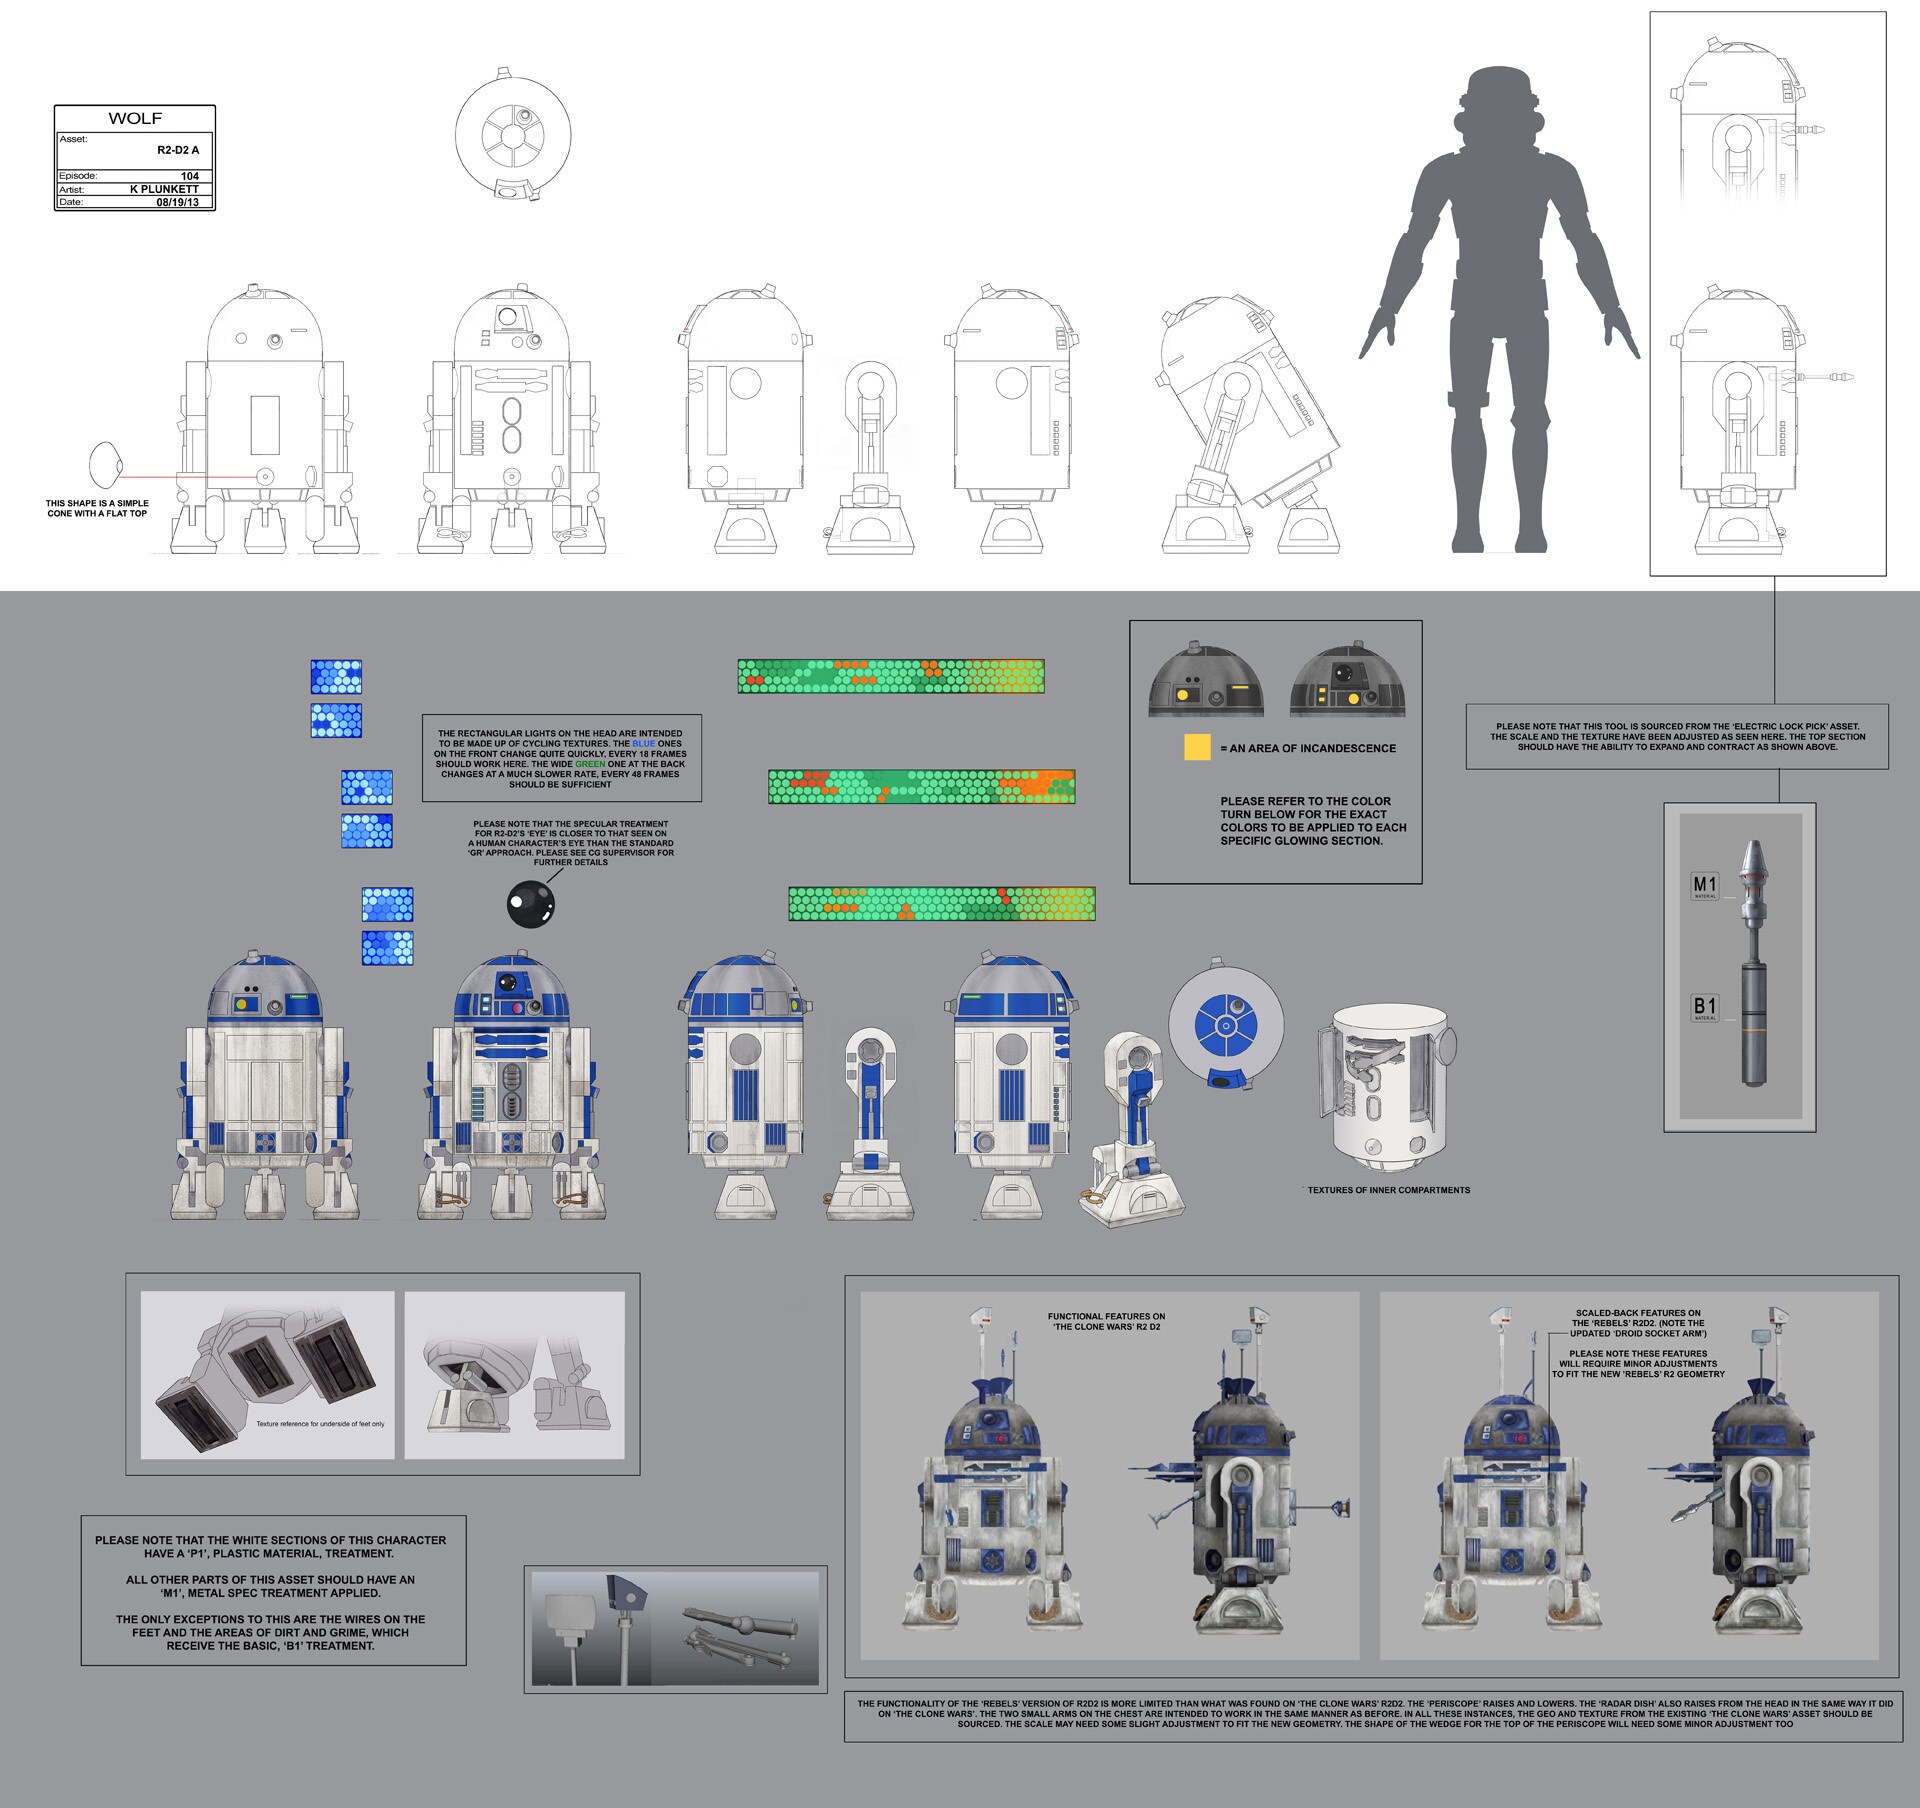 Detailed R2-D2 full character illustration by Kilian Plunkett.